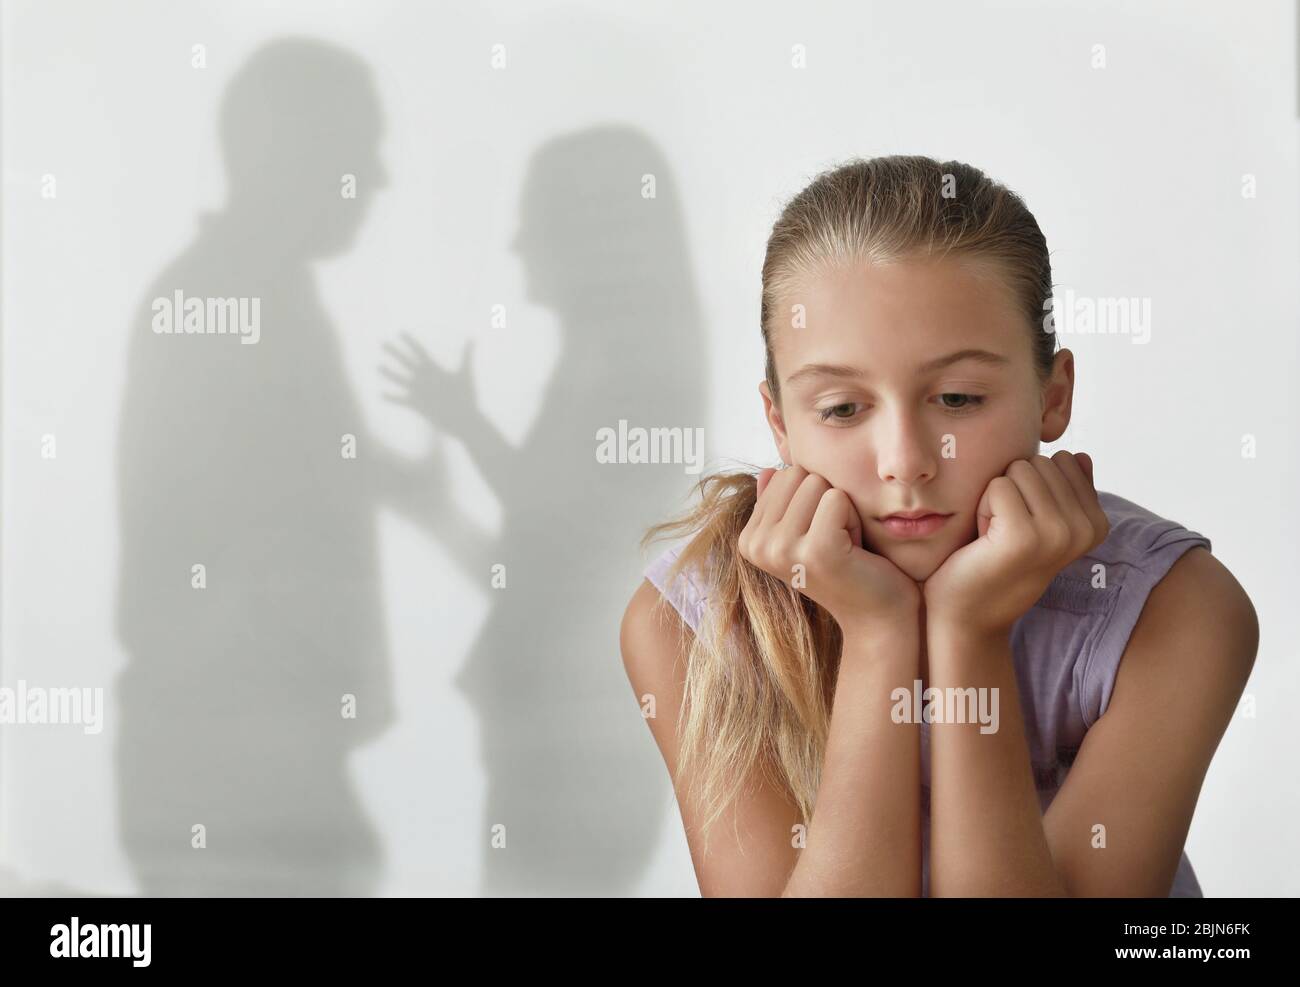 Bambina e silhouette di genitori litigiosi sullo sfondo. Concetto di violenza domestica Foto Stock